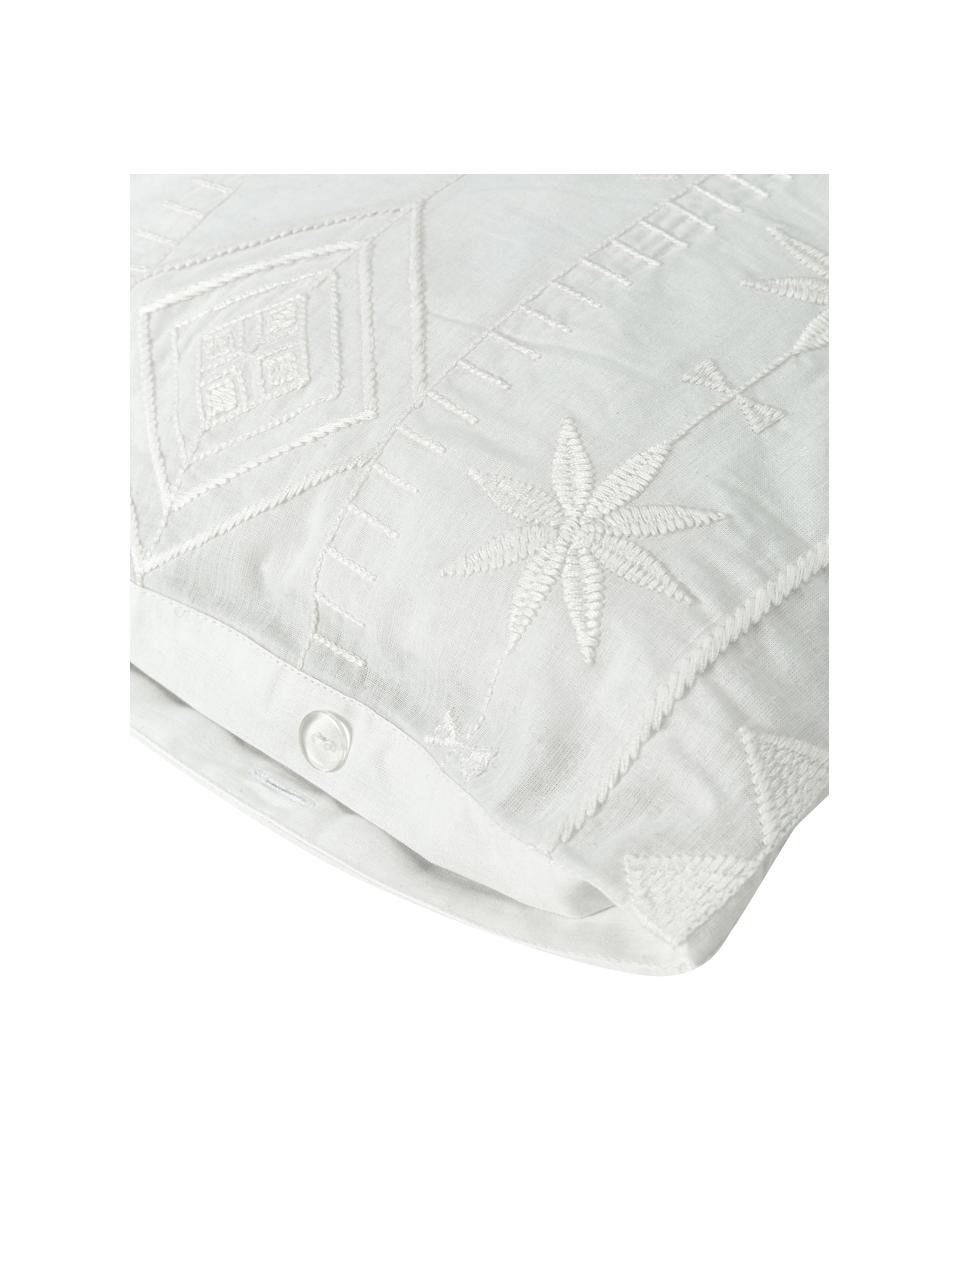 Bestickte Baumwoll-Kissenbezüge Elaine in Weiß, 2 Stück, 100% Baumwolle
Fadendichte 140 TC, Standard Qualität

Bettwäsche aus Baumwolle fühlt sich auf der Haut angenehm weich an, nimmt Feuchtigkeit gut auf und eignet sich für Allergiker., Weiß, B 40 x L 80 cm